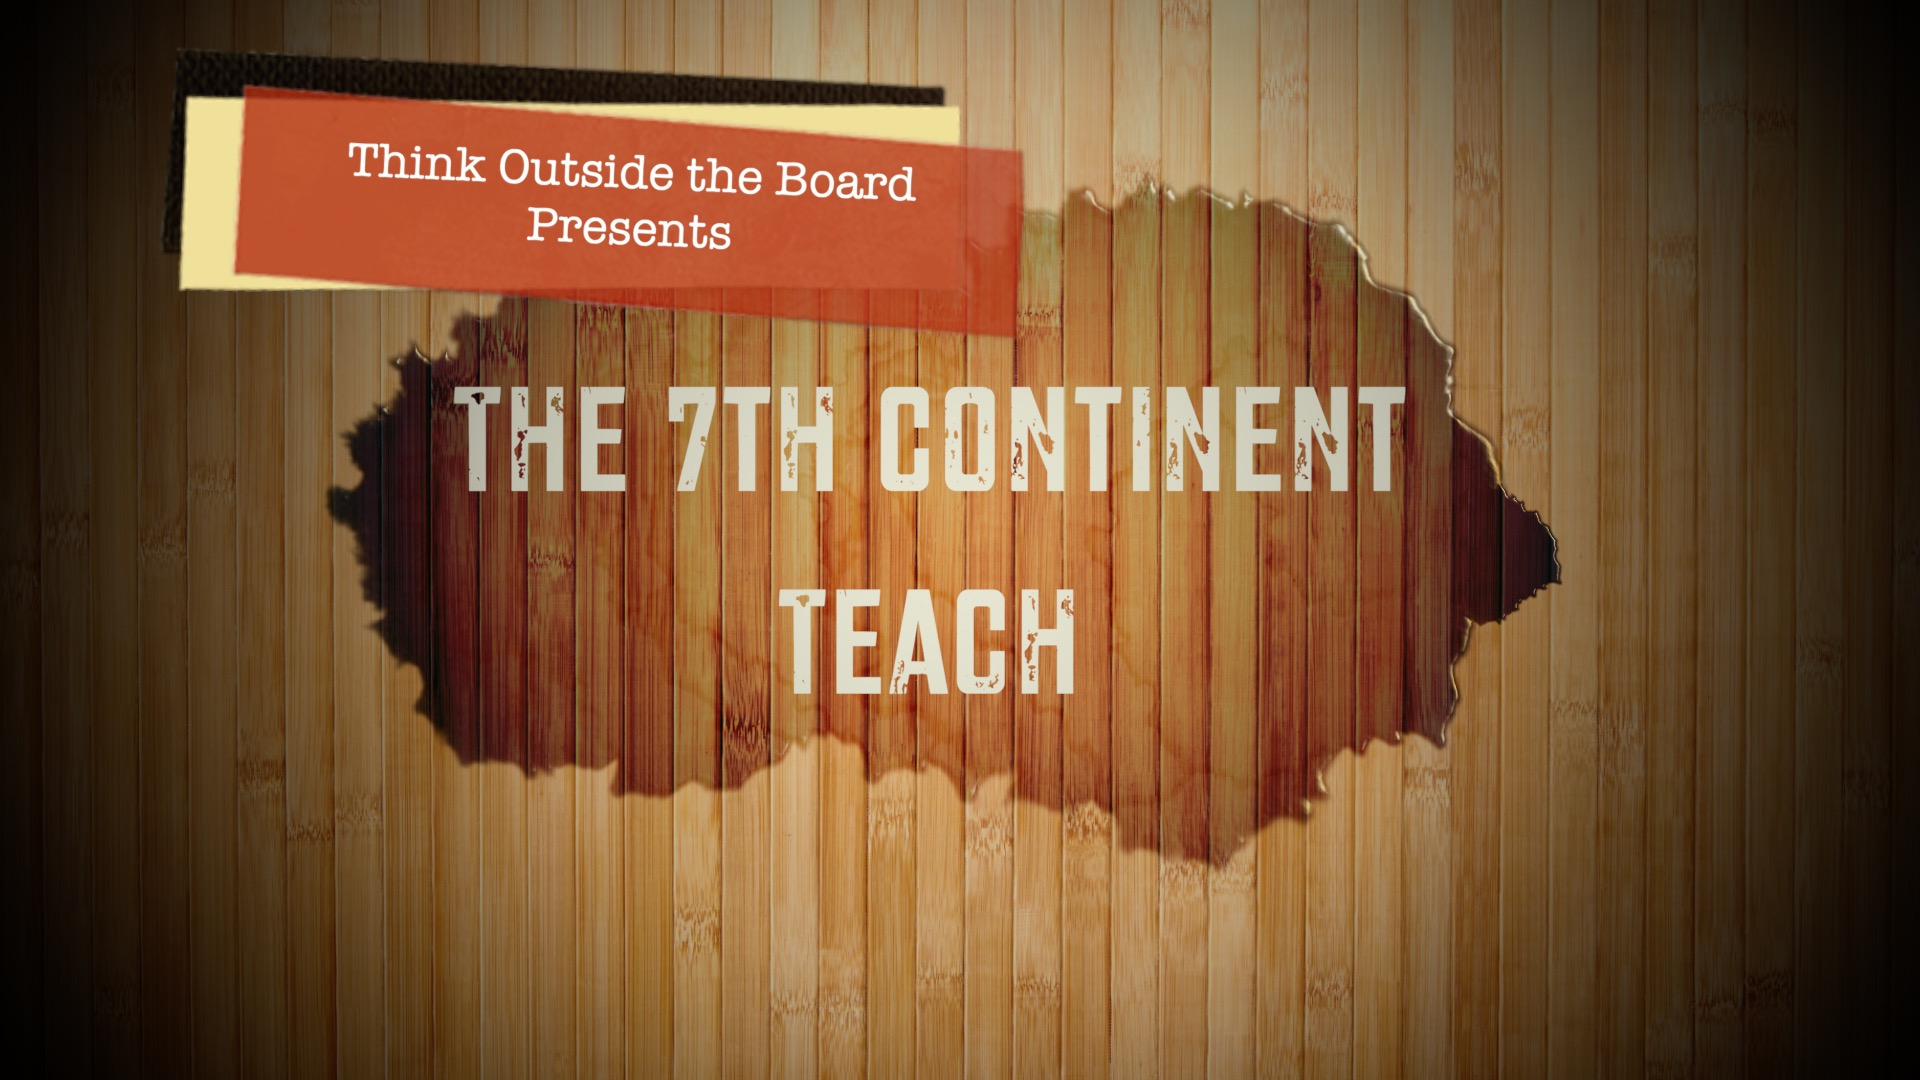 The 7th Continent Teach